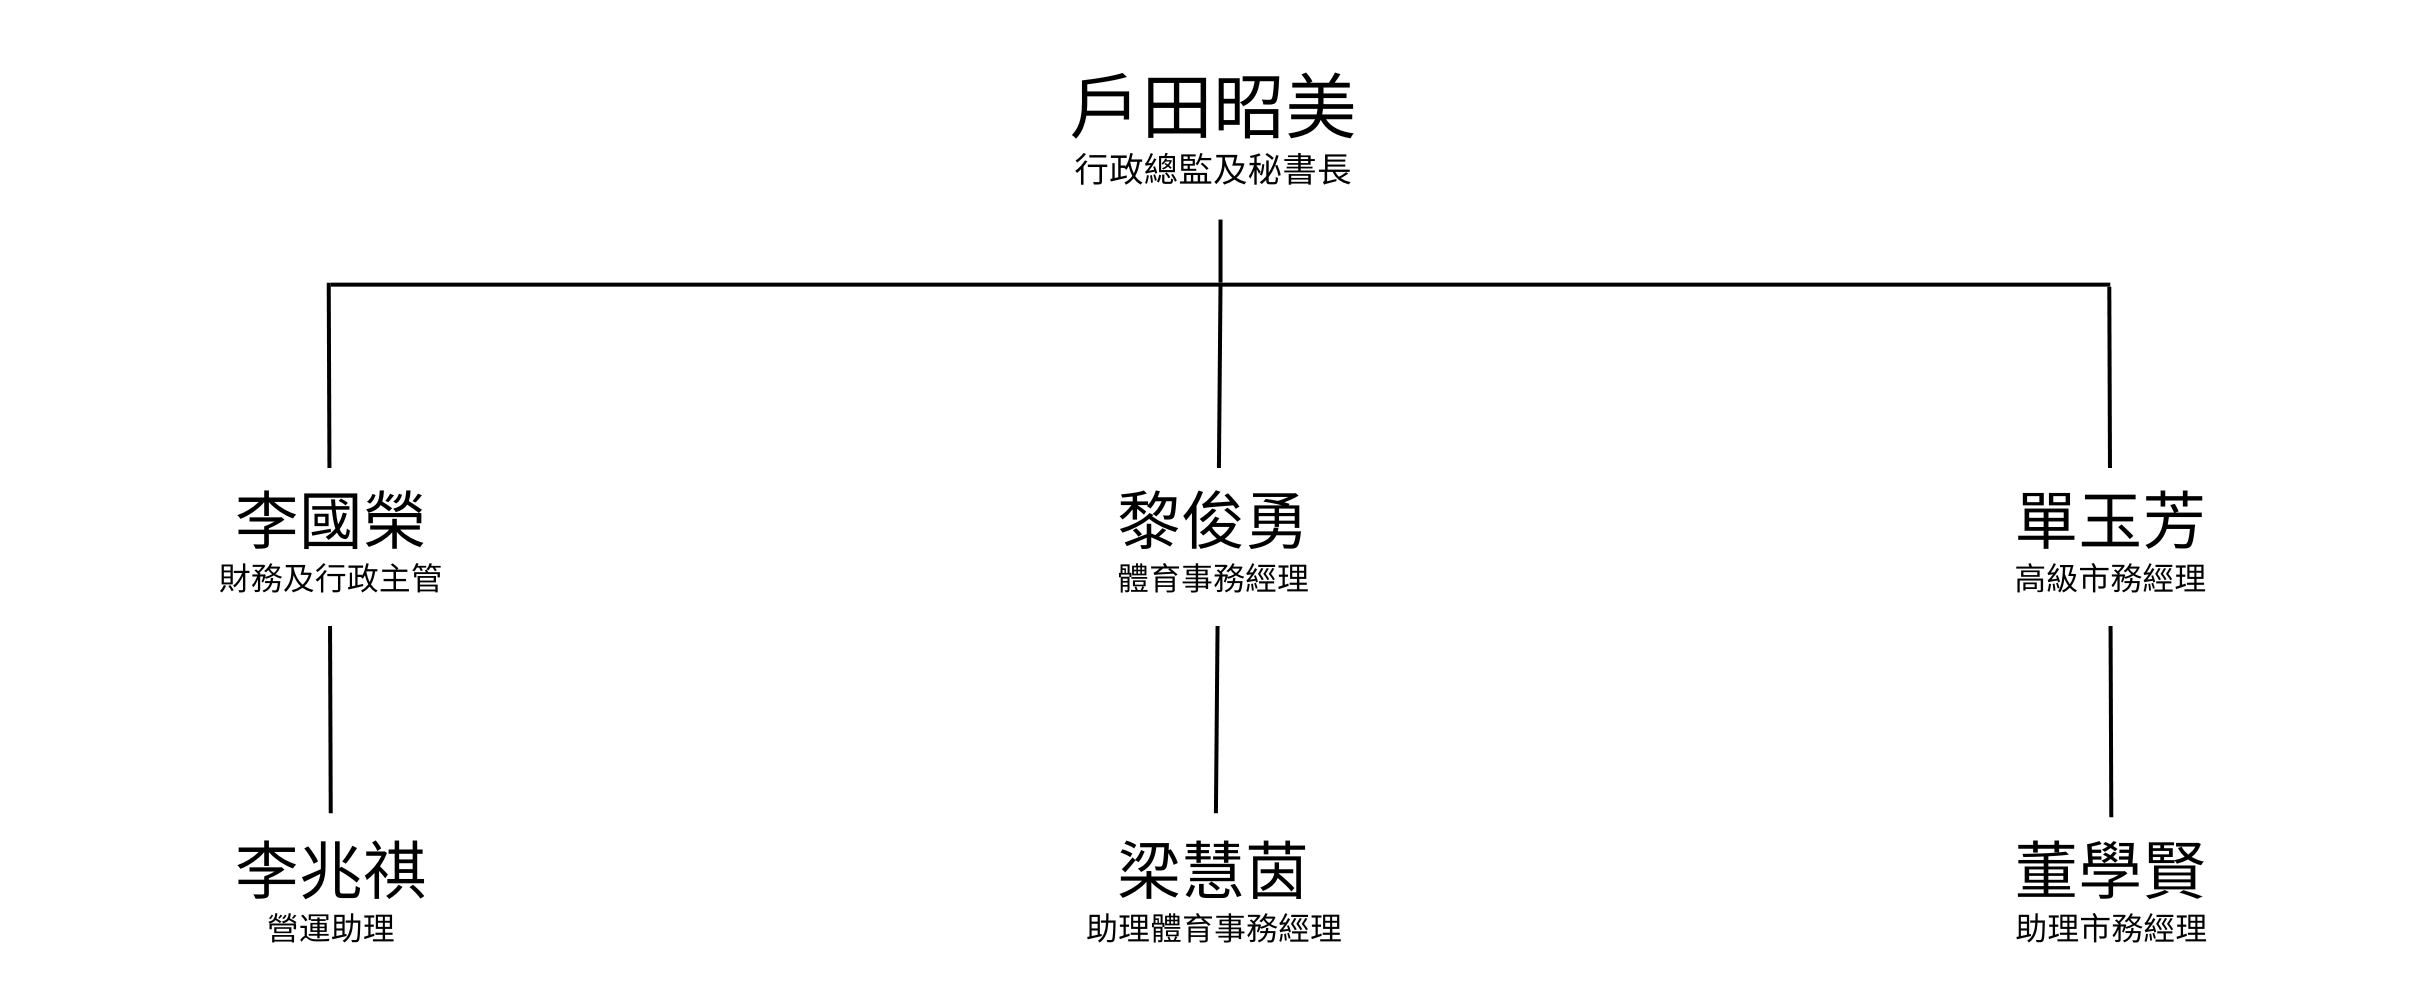 EFHKC Org Chart Chi